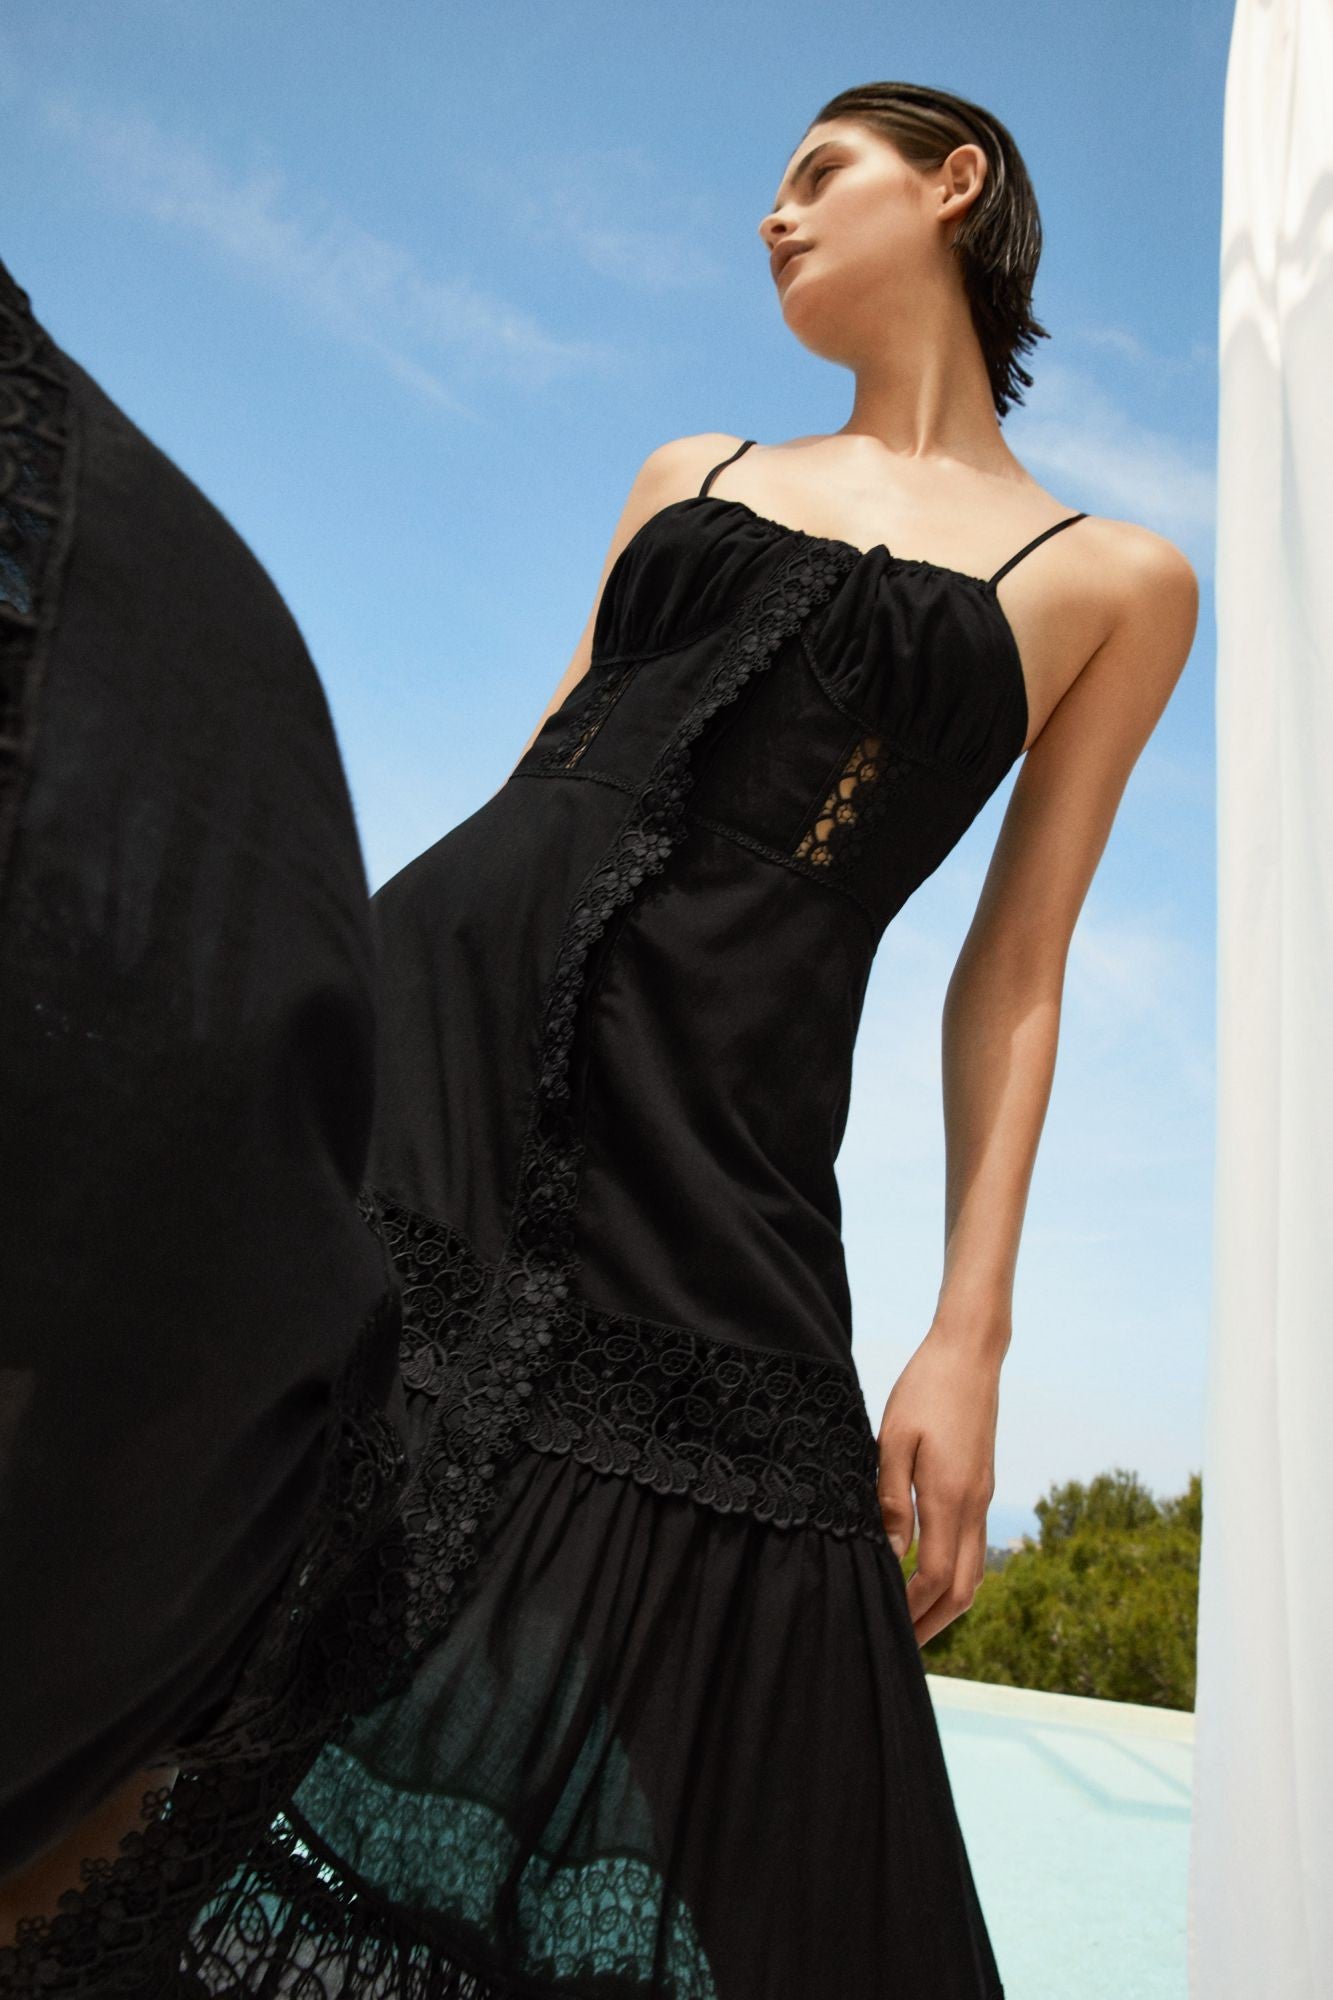 Charo Ruiz Marisa Long Dress - Premium Long dress from Marina St Barth - Just $755.00! Shop now at Marina St Barth